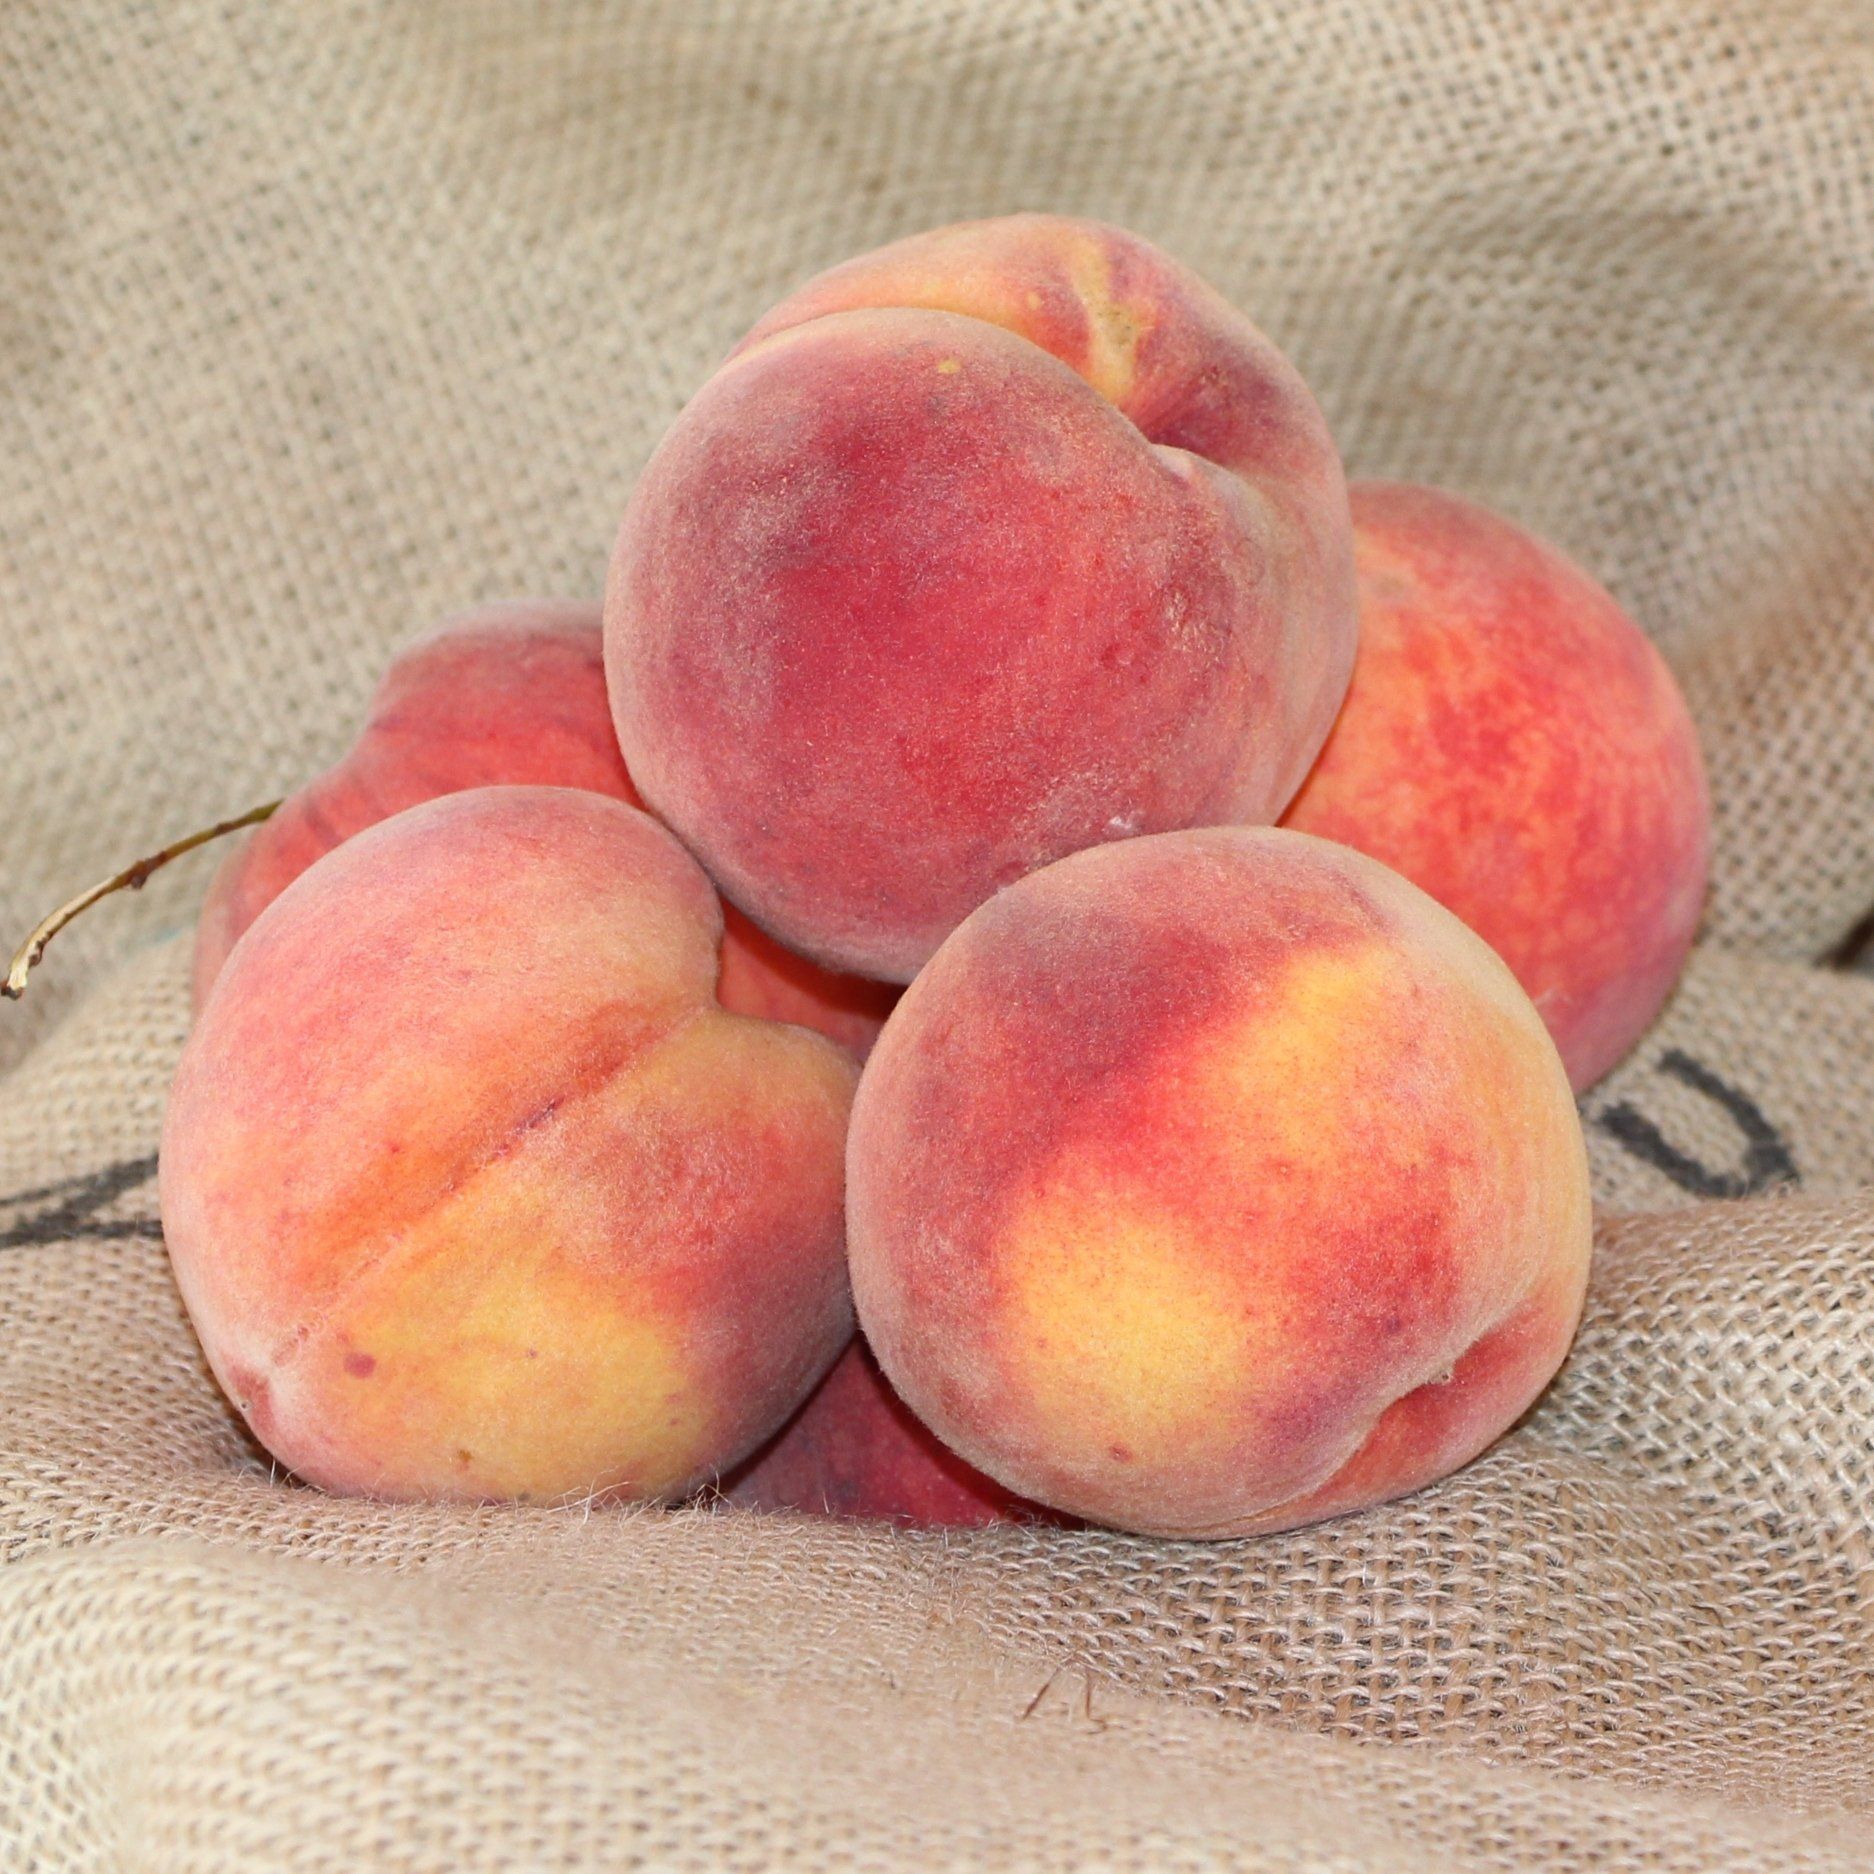 locally grown peaches